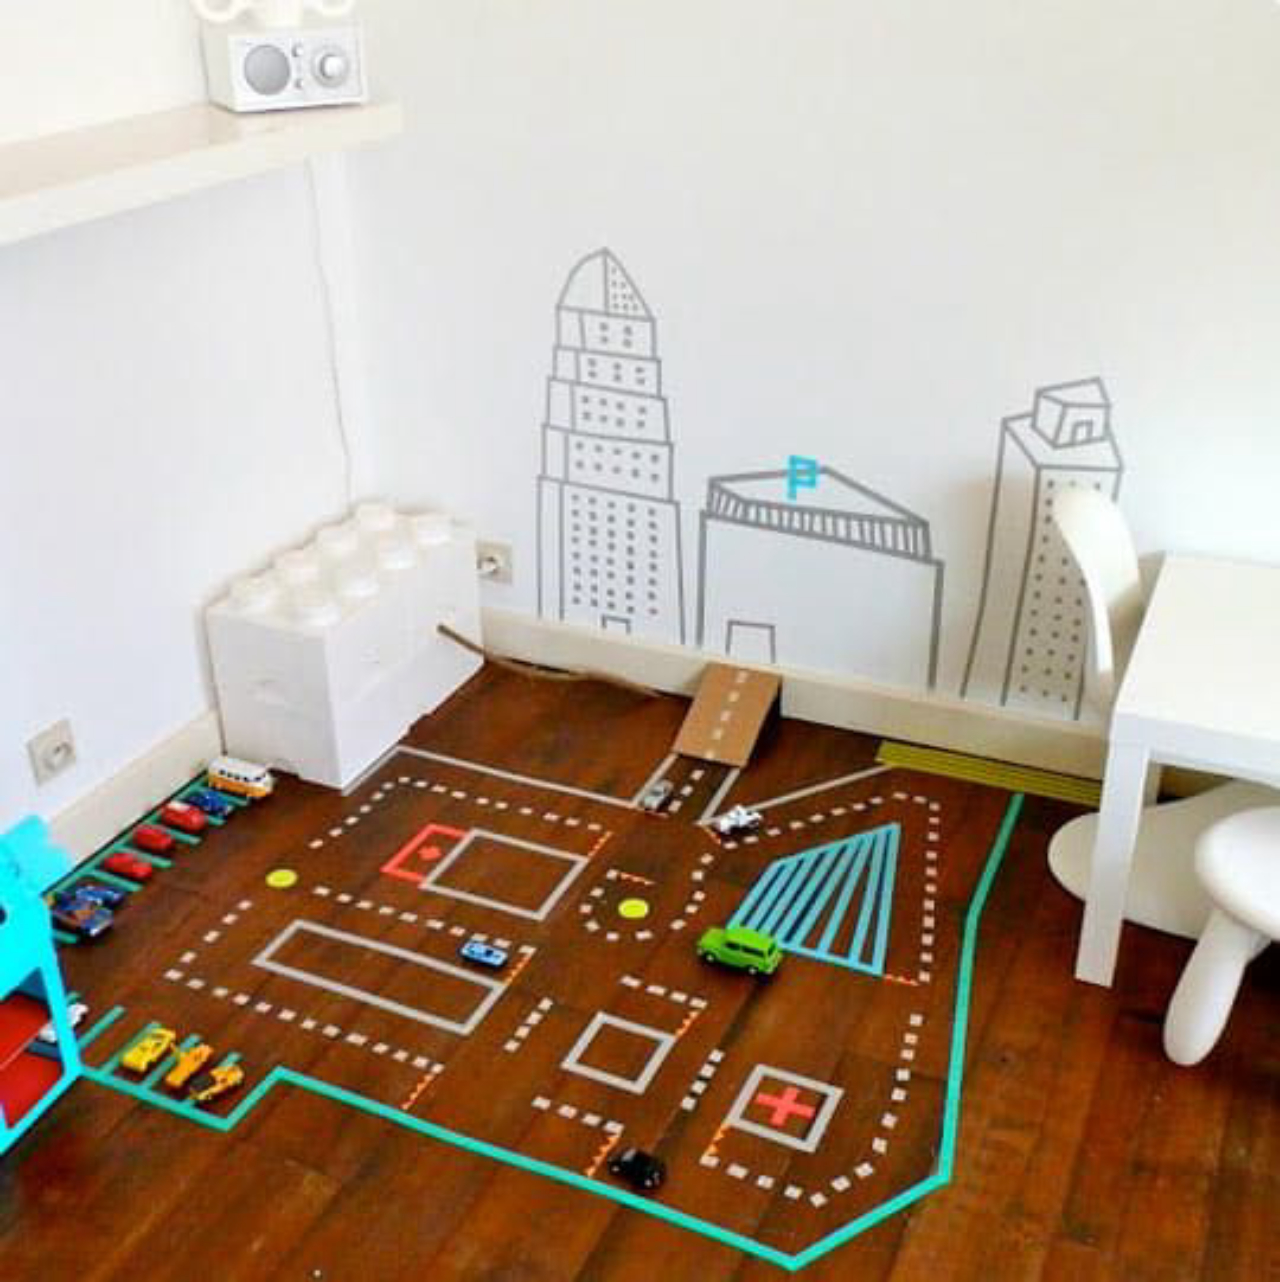 Adesivos e objetos que estimulem o movimento e a criatividade são boas formas de personalizar espaços infantis. Foto: Divulgação